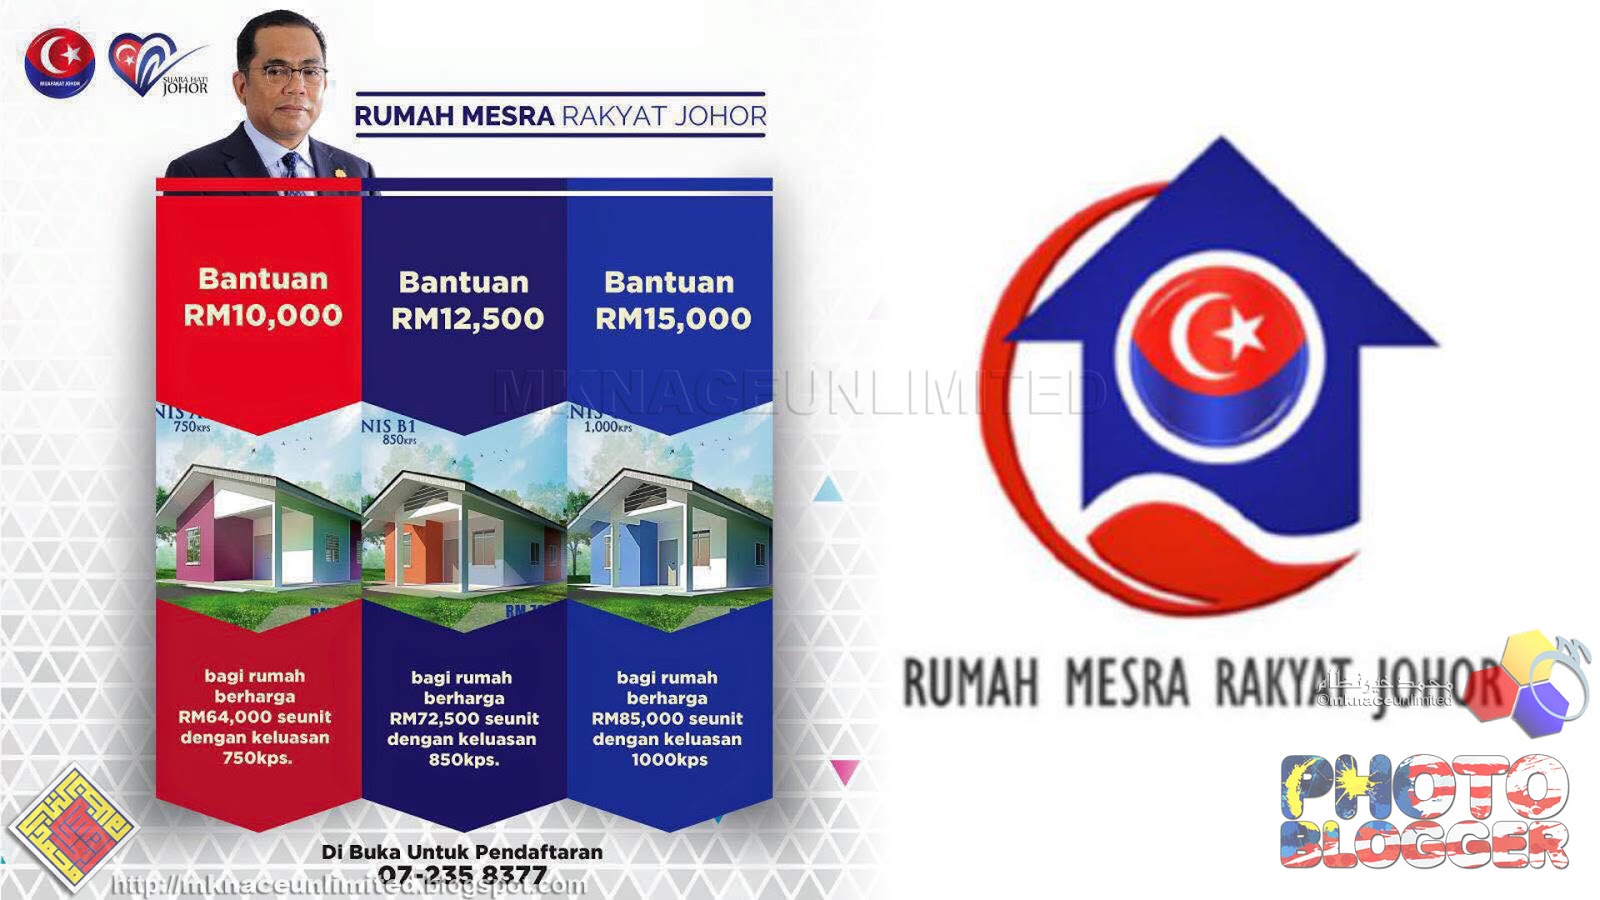 Rumah Mesra Rakyat Johor (RMRJ)  mknace unlimited™The 